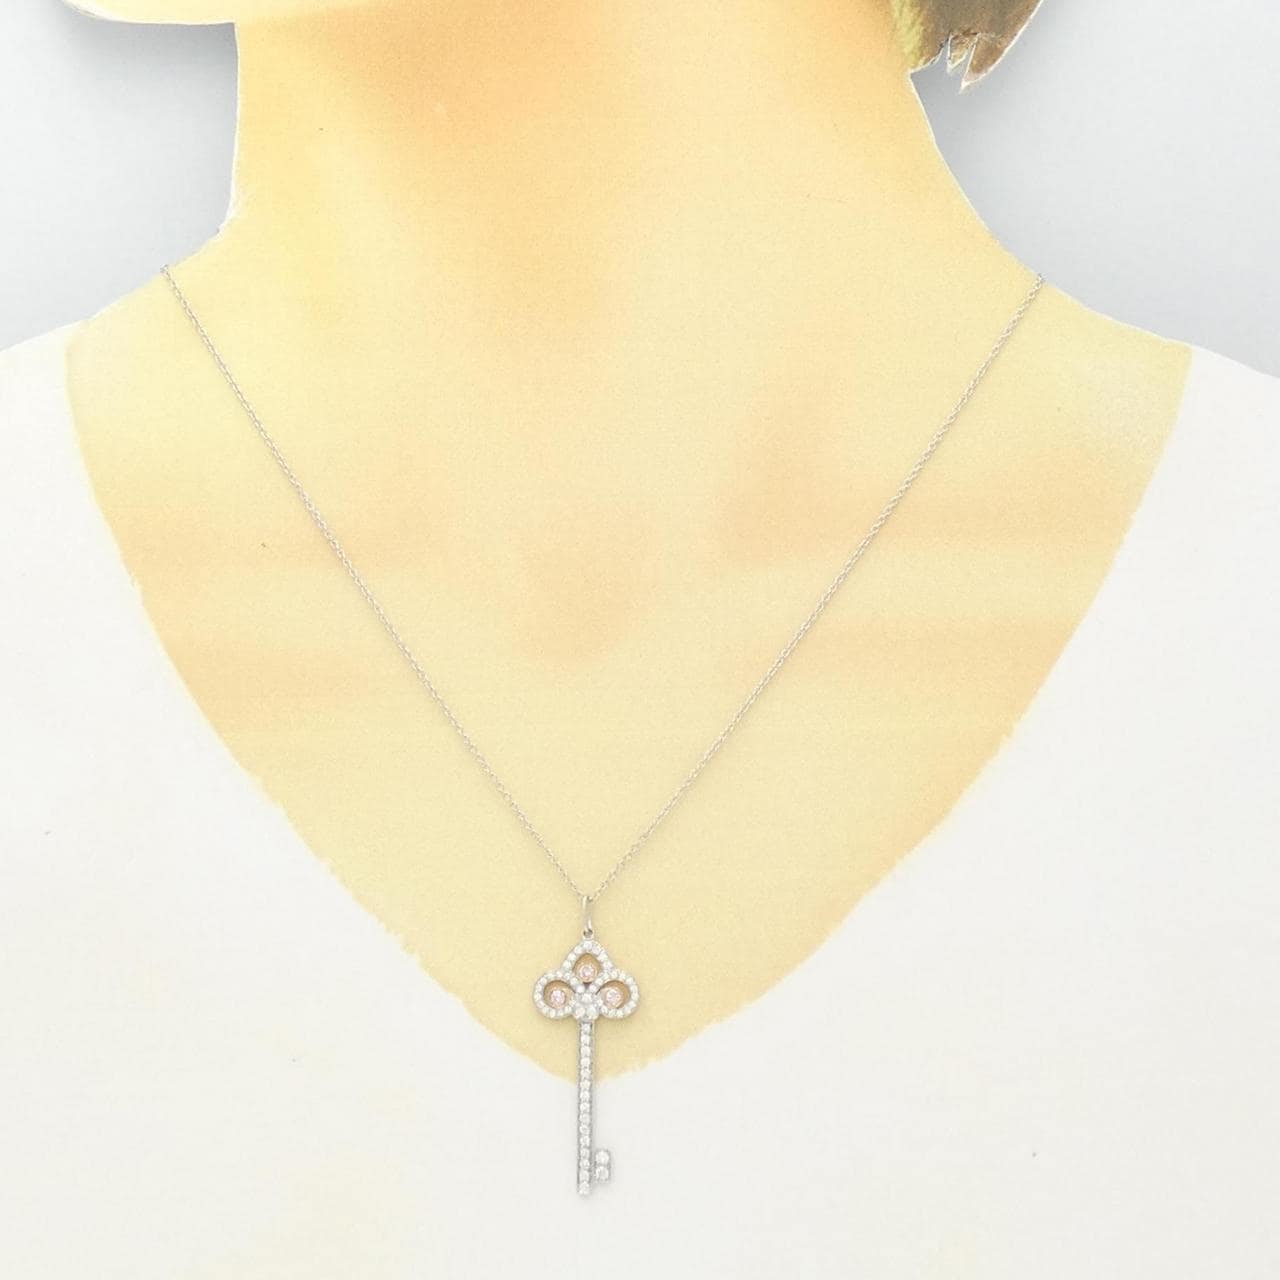 TIFFANY fleur-de-lis key necklace